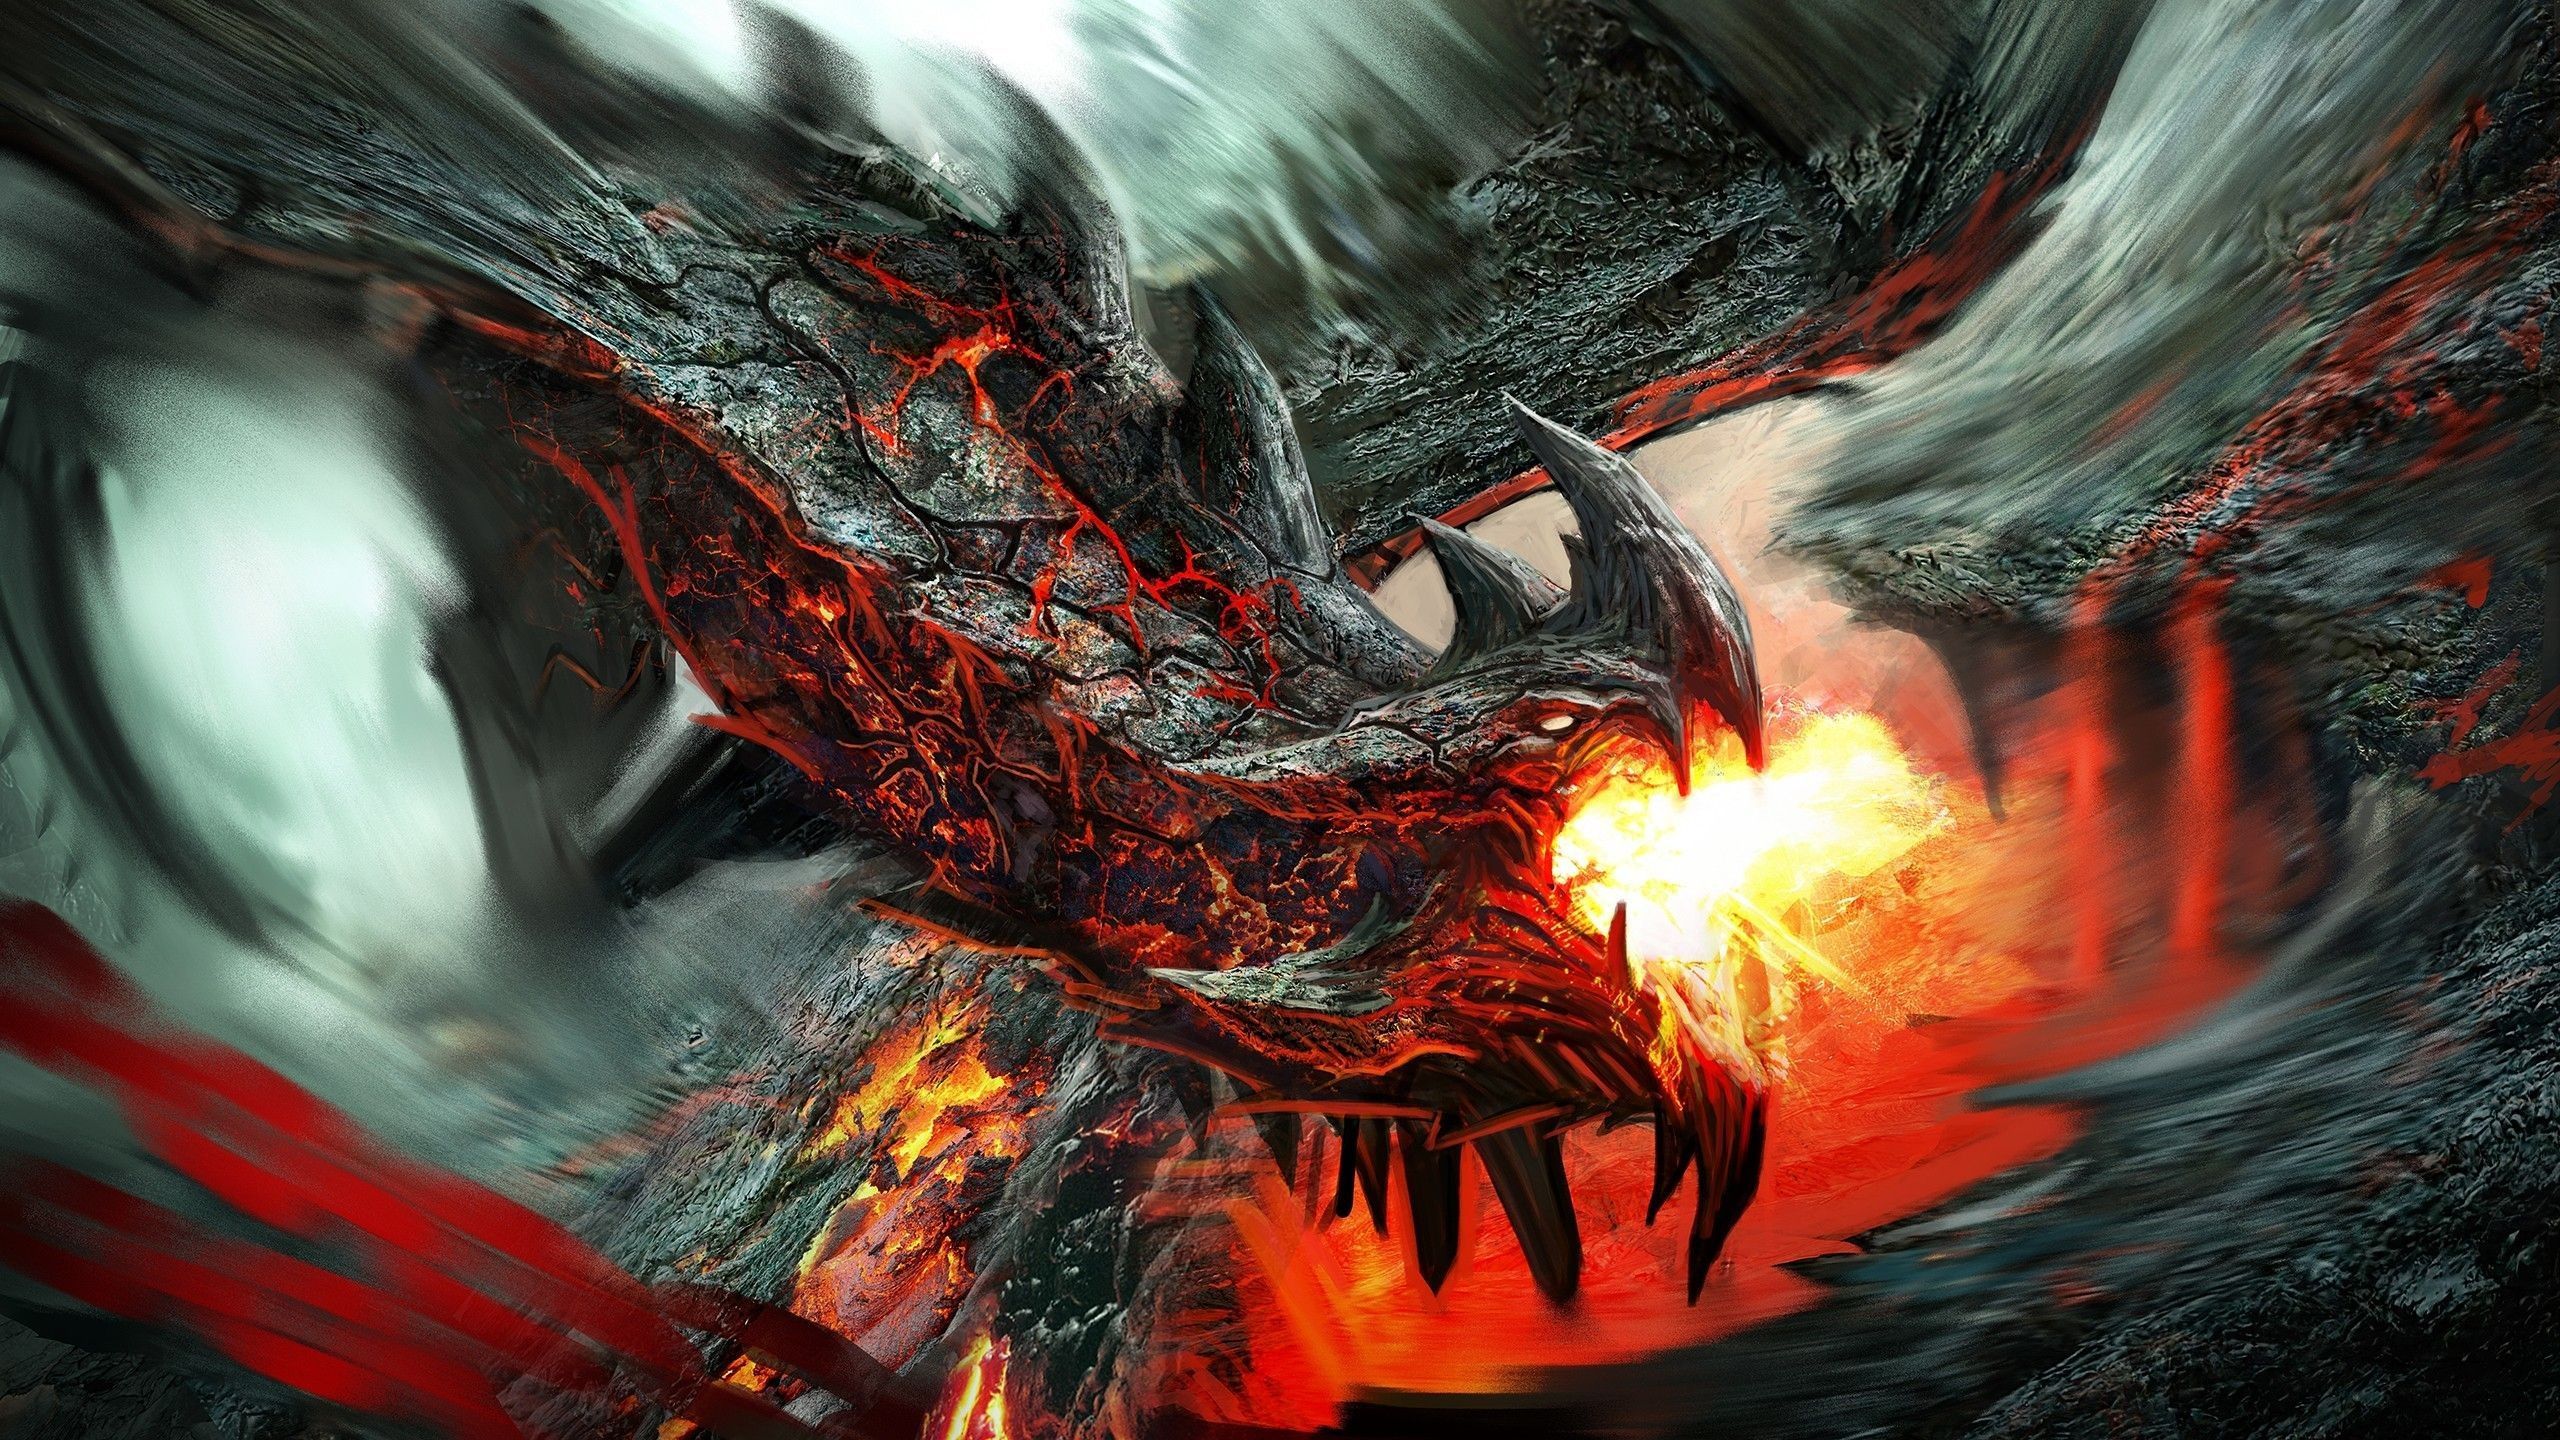 fire, #lava, #rock, #creature, #fantasy art, #artwork, #dragon, wallpaper. Dragon picture, Flame art, Fantasy dragon